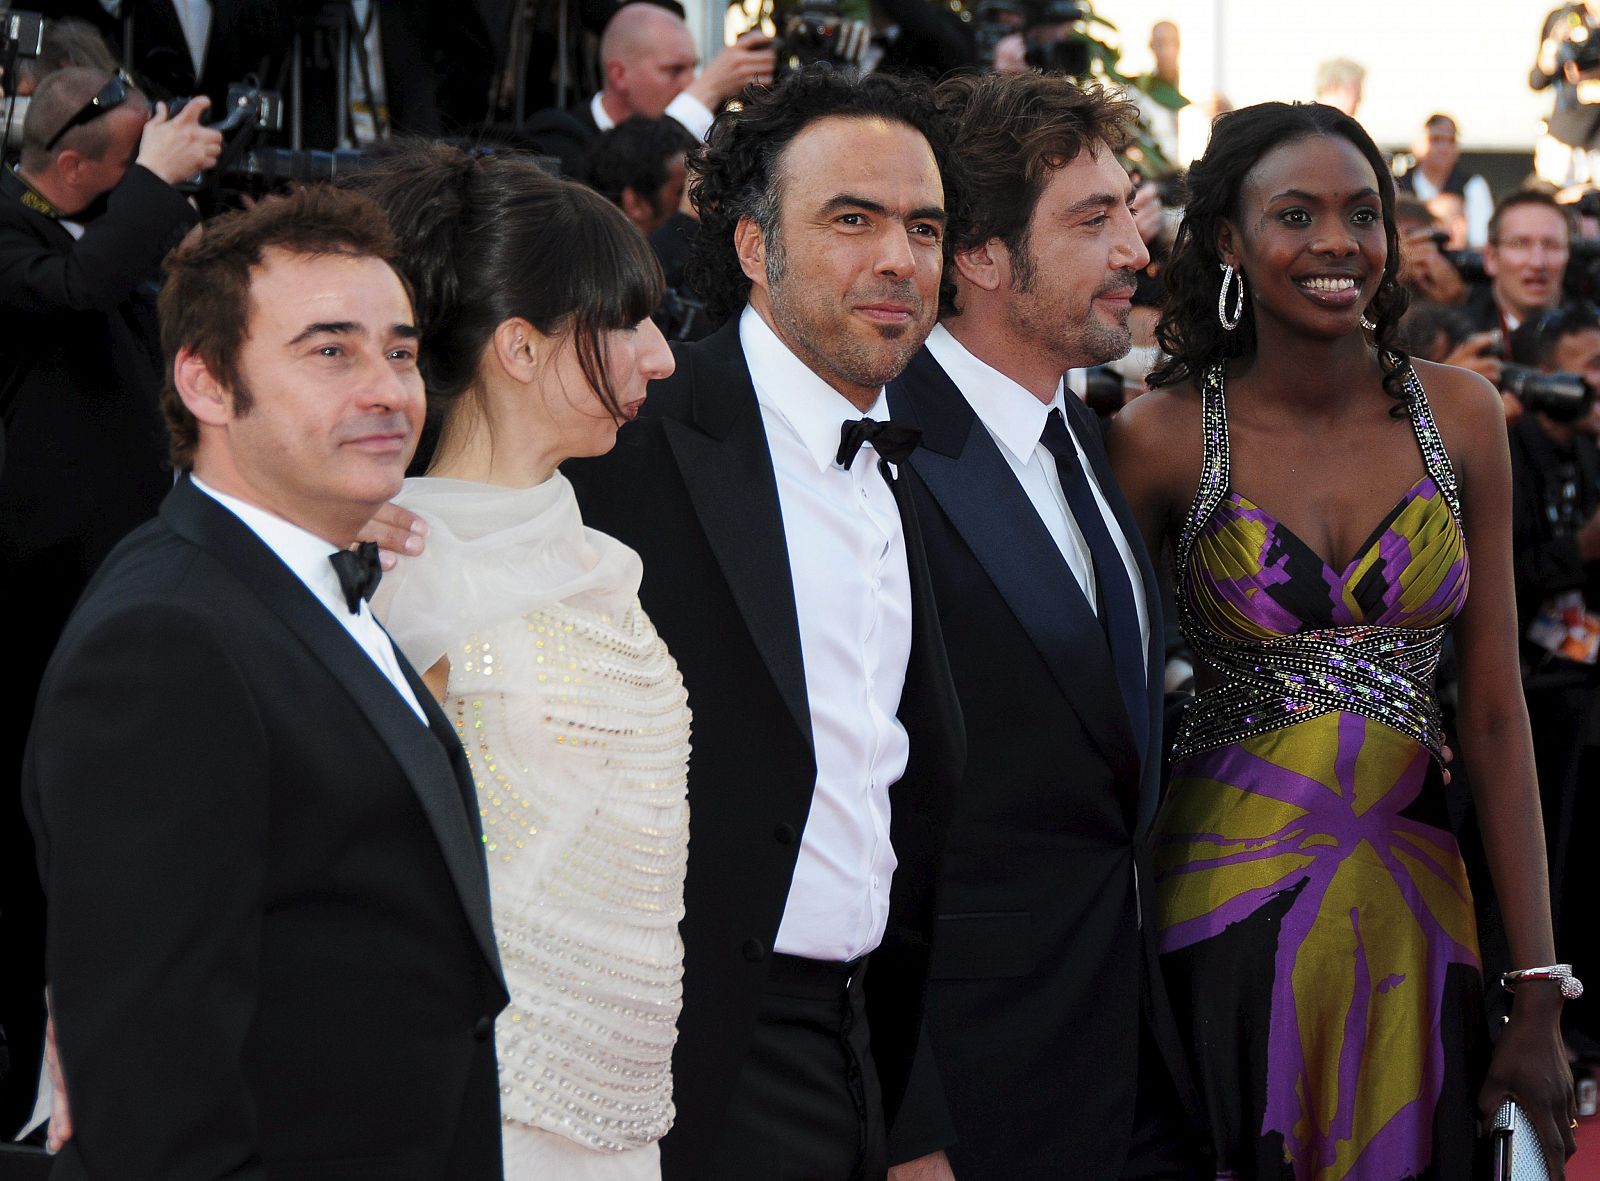 Eduard Fernández, Maricel Álvarez, González Iñárritu, Bardem y Diaryatou Daff.